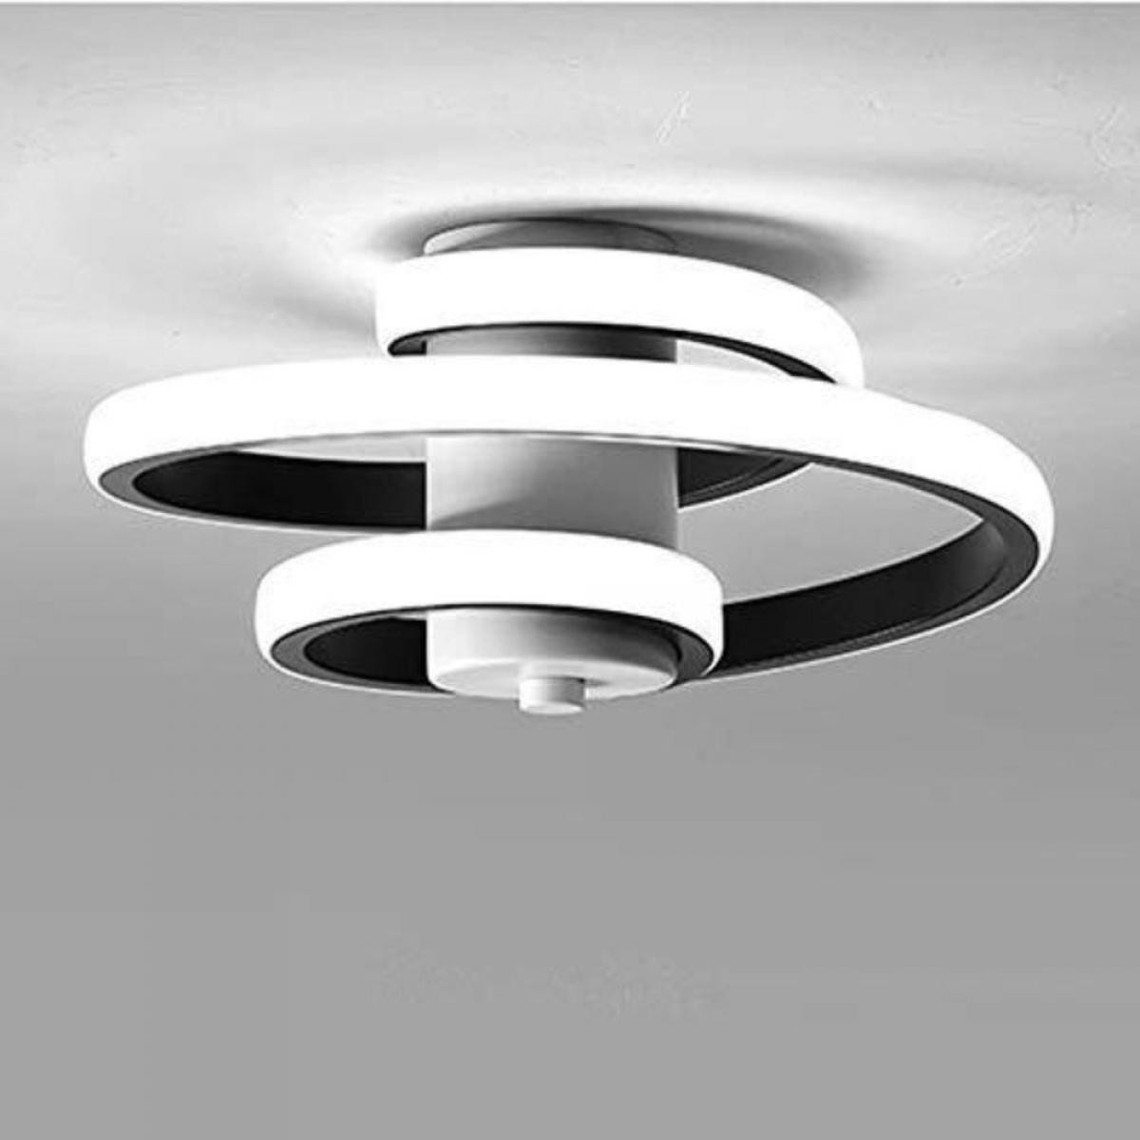 Plafonniers Goeco Plafonnier LED Moderne, 24W Plafonnier Design Créatif en Forme de Spirale, Luminaire Plafonnier Noir Metal, Lampe de Plafond LED pour Salon Chambre Cuisine Restaurant Couloir (Blanc Froid 6000K)